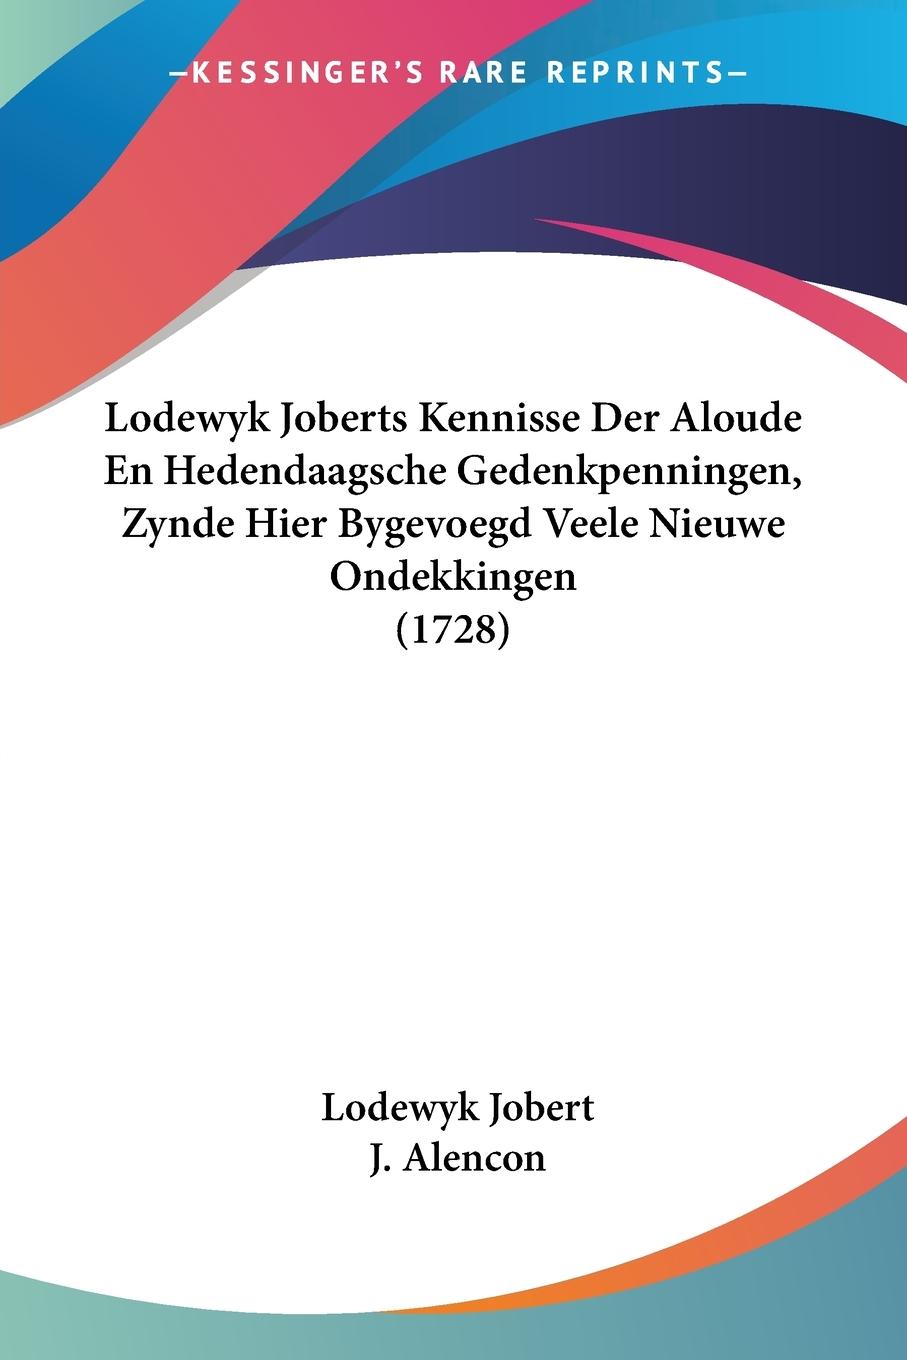 Lodewyk Joberts Kennisse Der Aloude En Hedendaagsche Gedenkpenningen, Zynde Hier Bygevoegd Veele Nieuwe Ondekkingen (1728) - Jobert, Lodewyk Alencon, J.